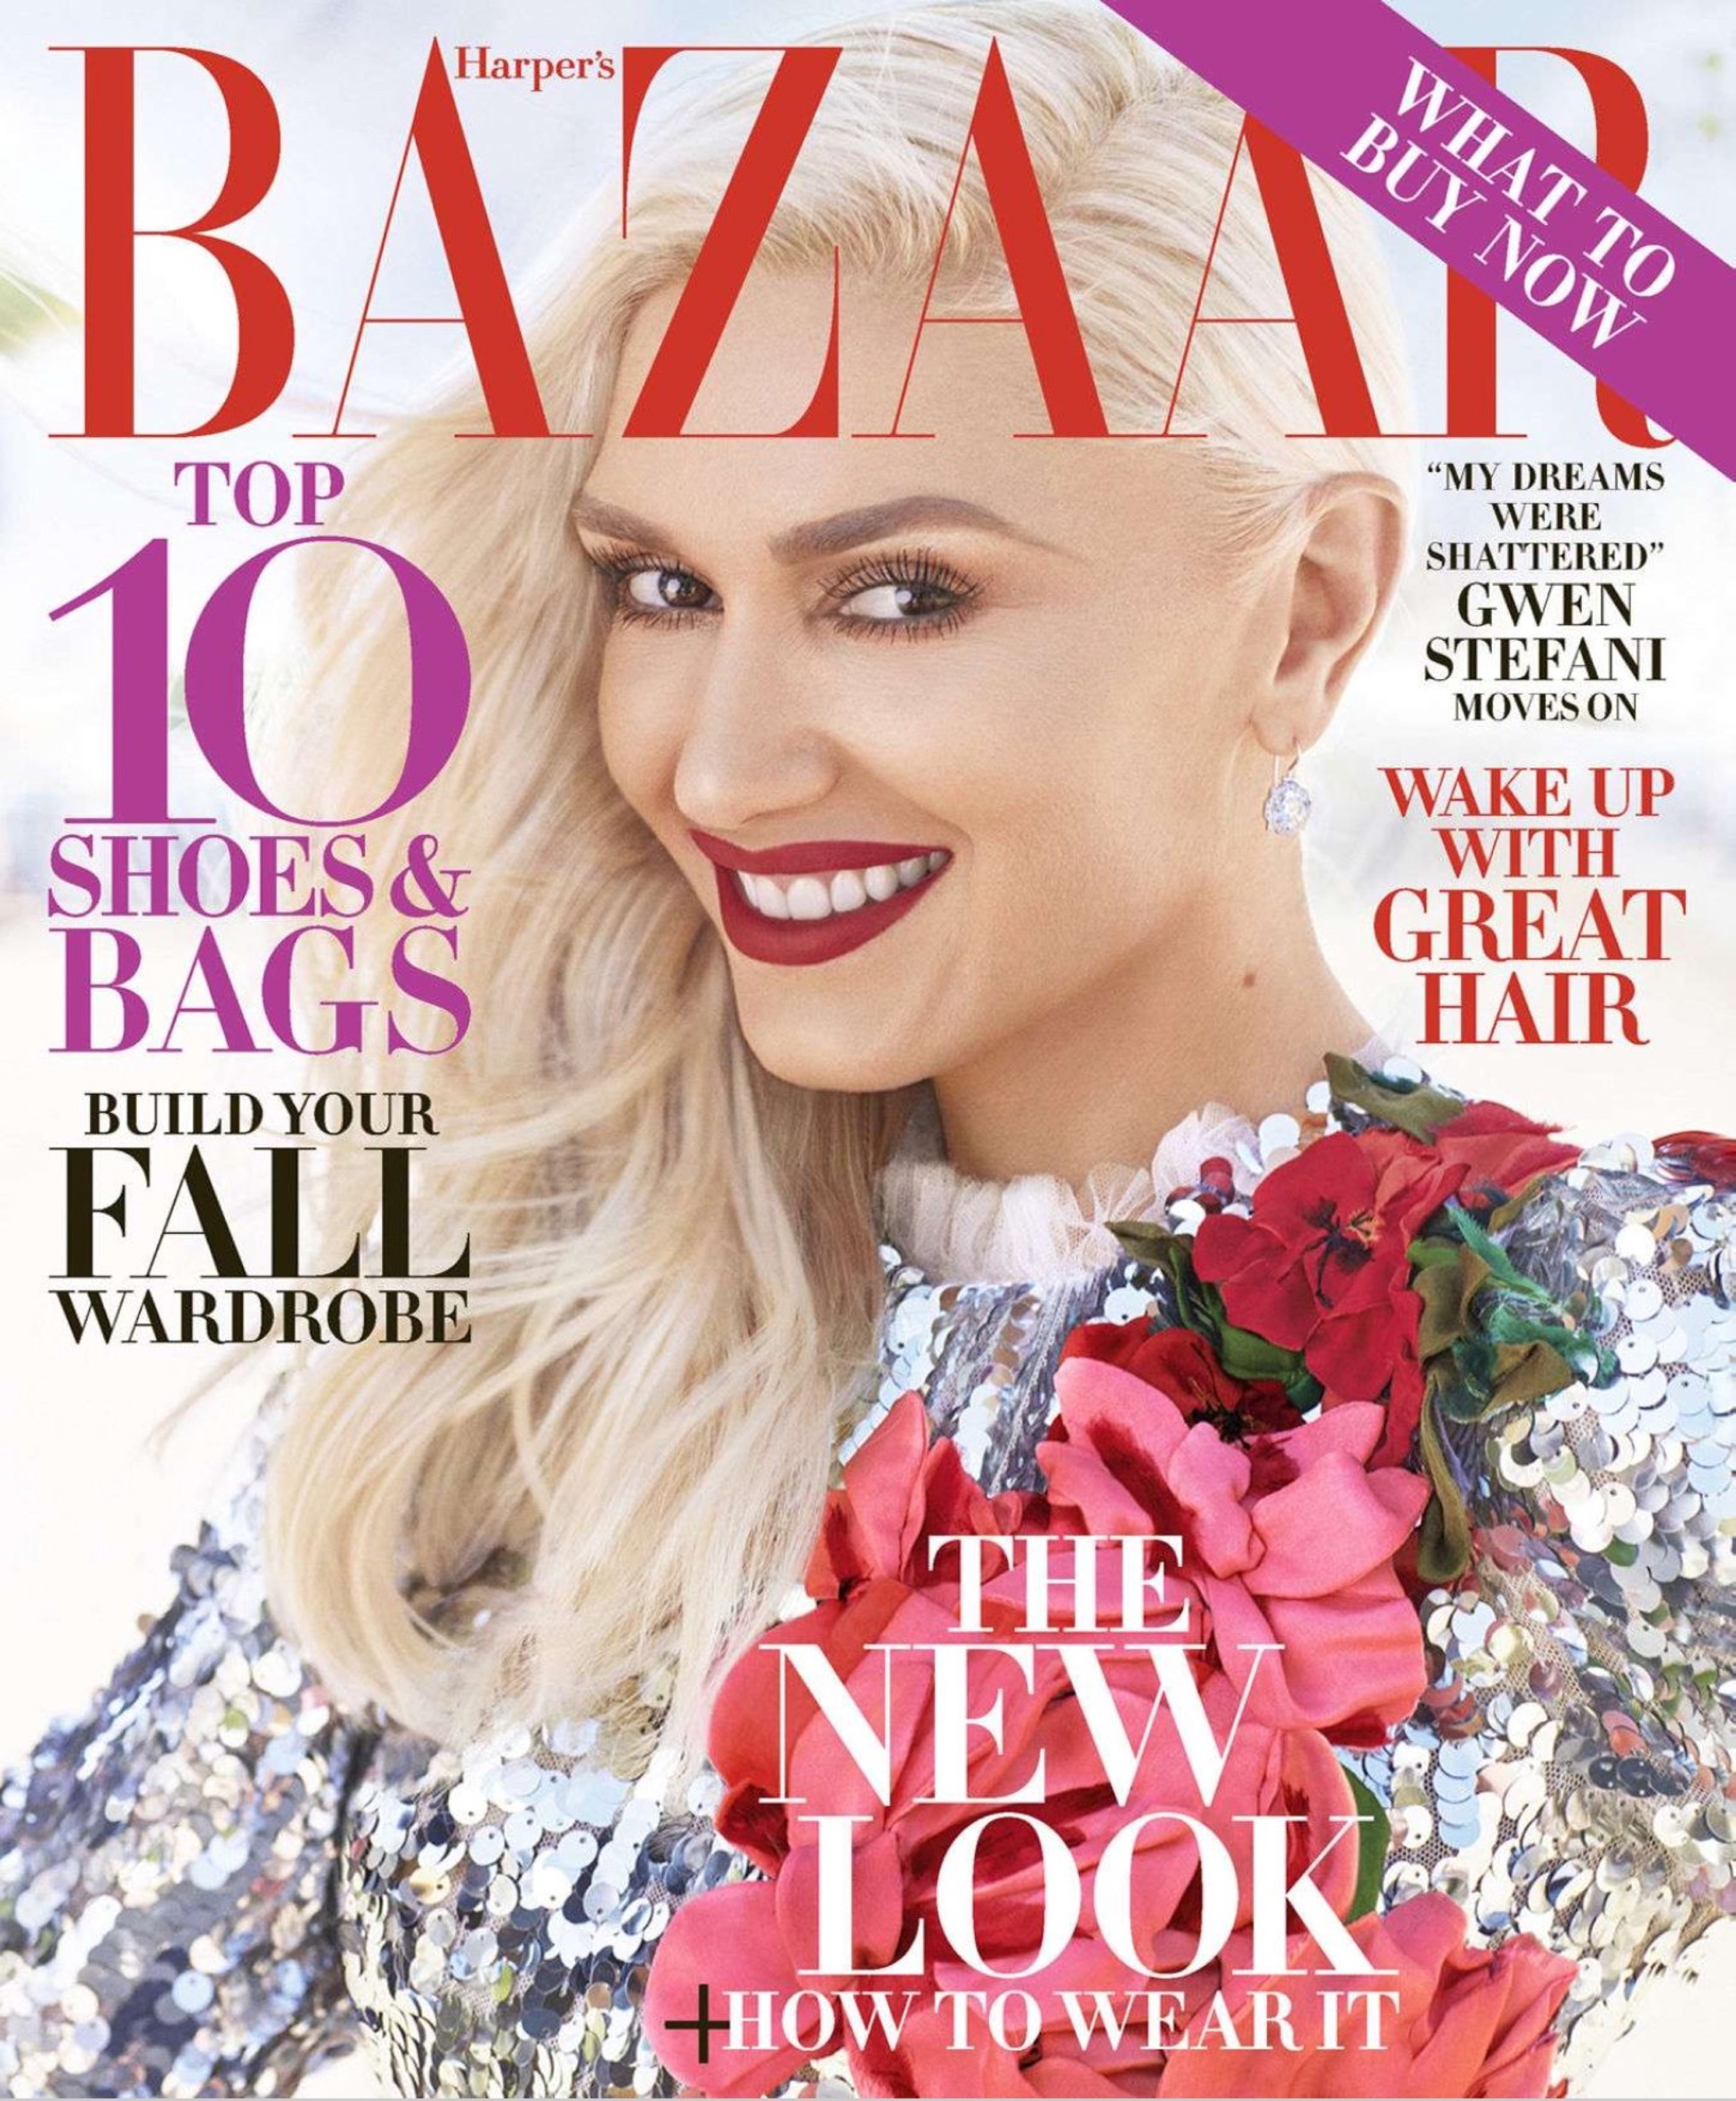 Harper's Bazaar - August 2016